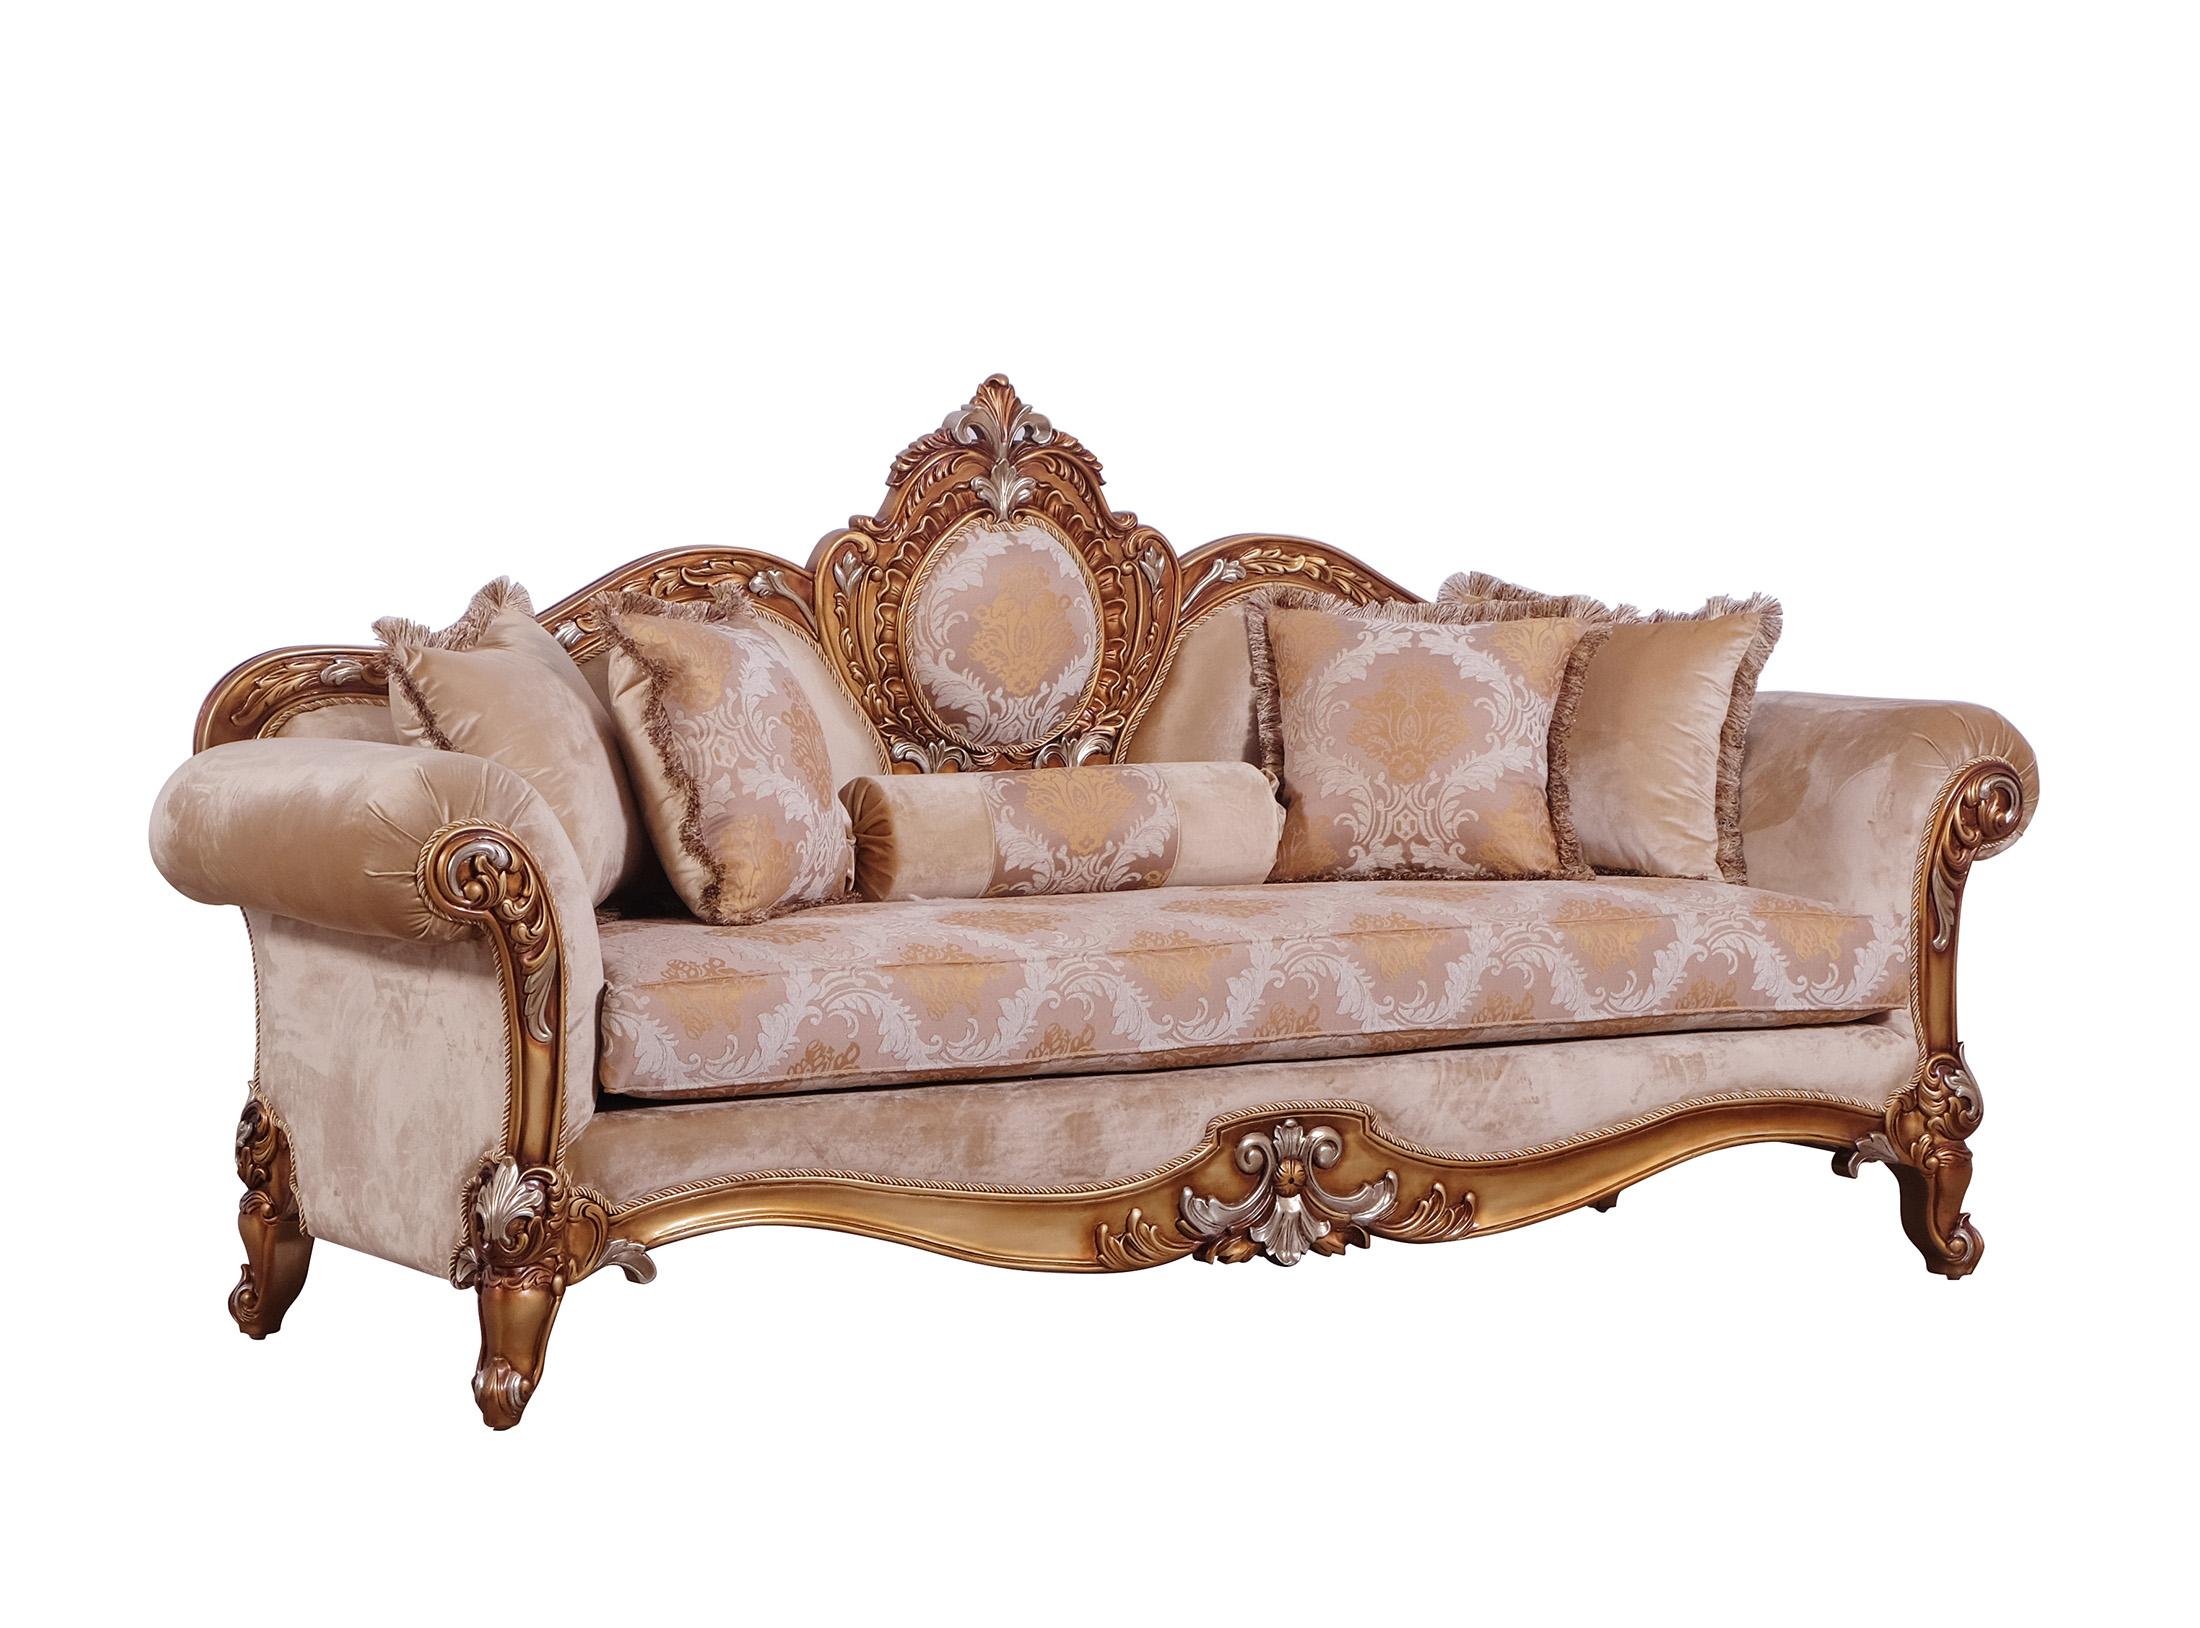 Classic, Traditional Sofa RAFFAELLO II 41026-S in Silver, Gold, Brown Fabric